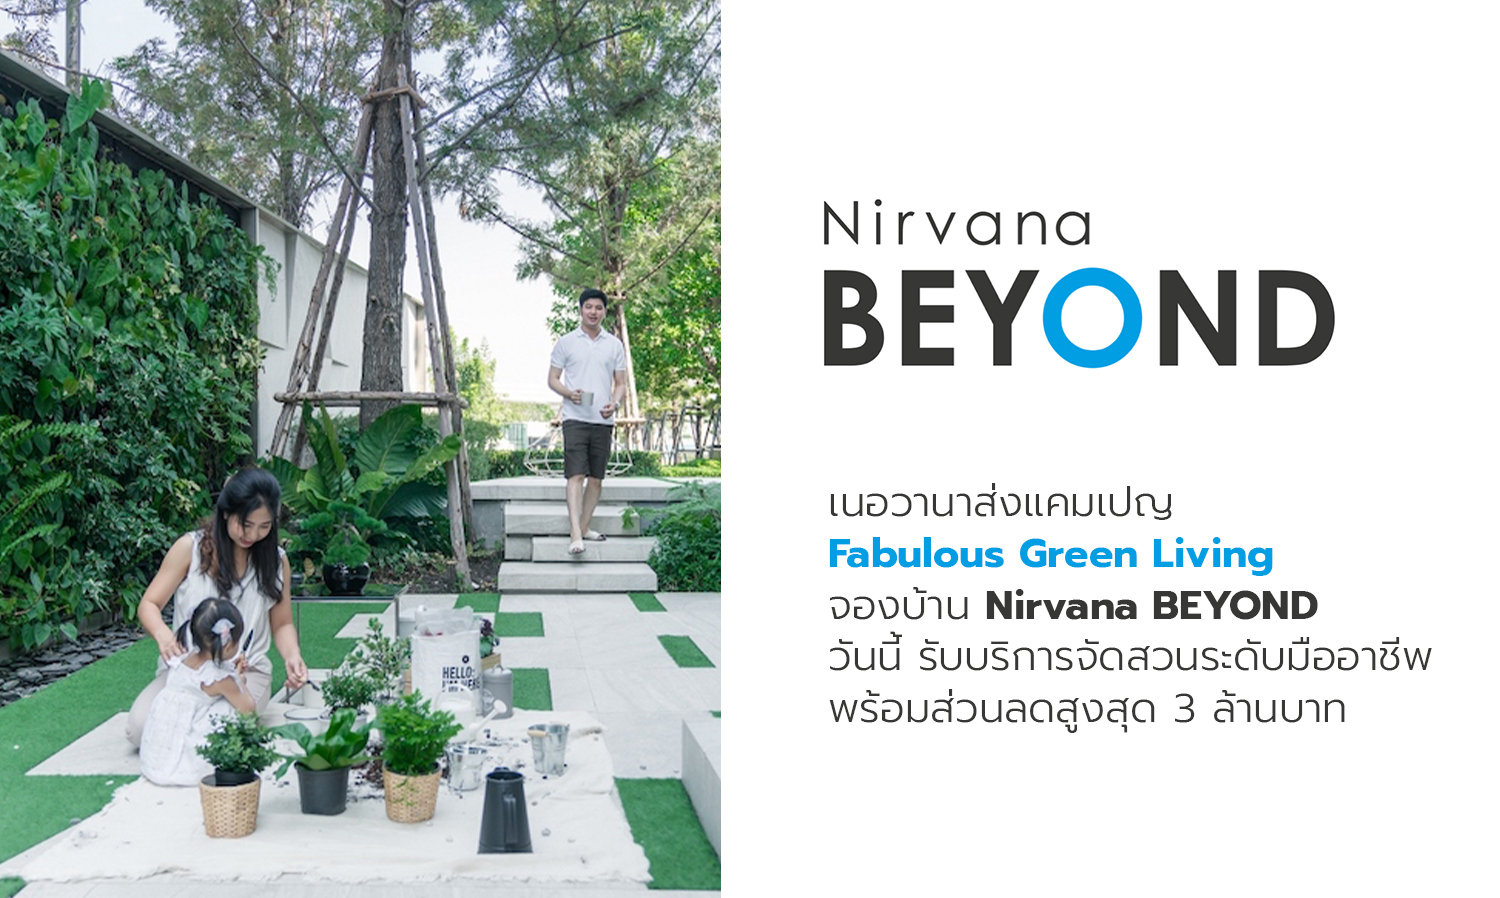 เนอวานาส่งแคมเปญ Fabulous Green Living จองบ้าน Nirvana BEYOND วันนี้ รับบริการจัดสวนระดับมืออาชีพพร้อมส่วนลดสูงสุด 3 ล้านบาท